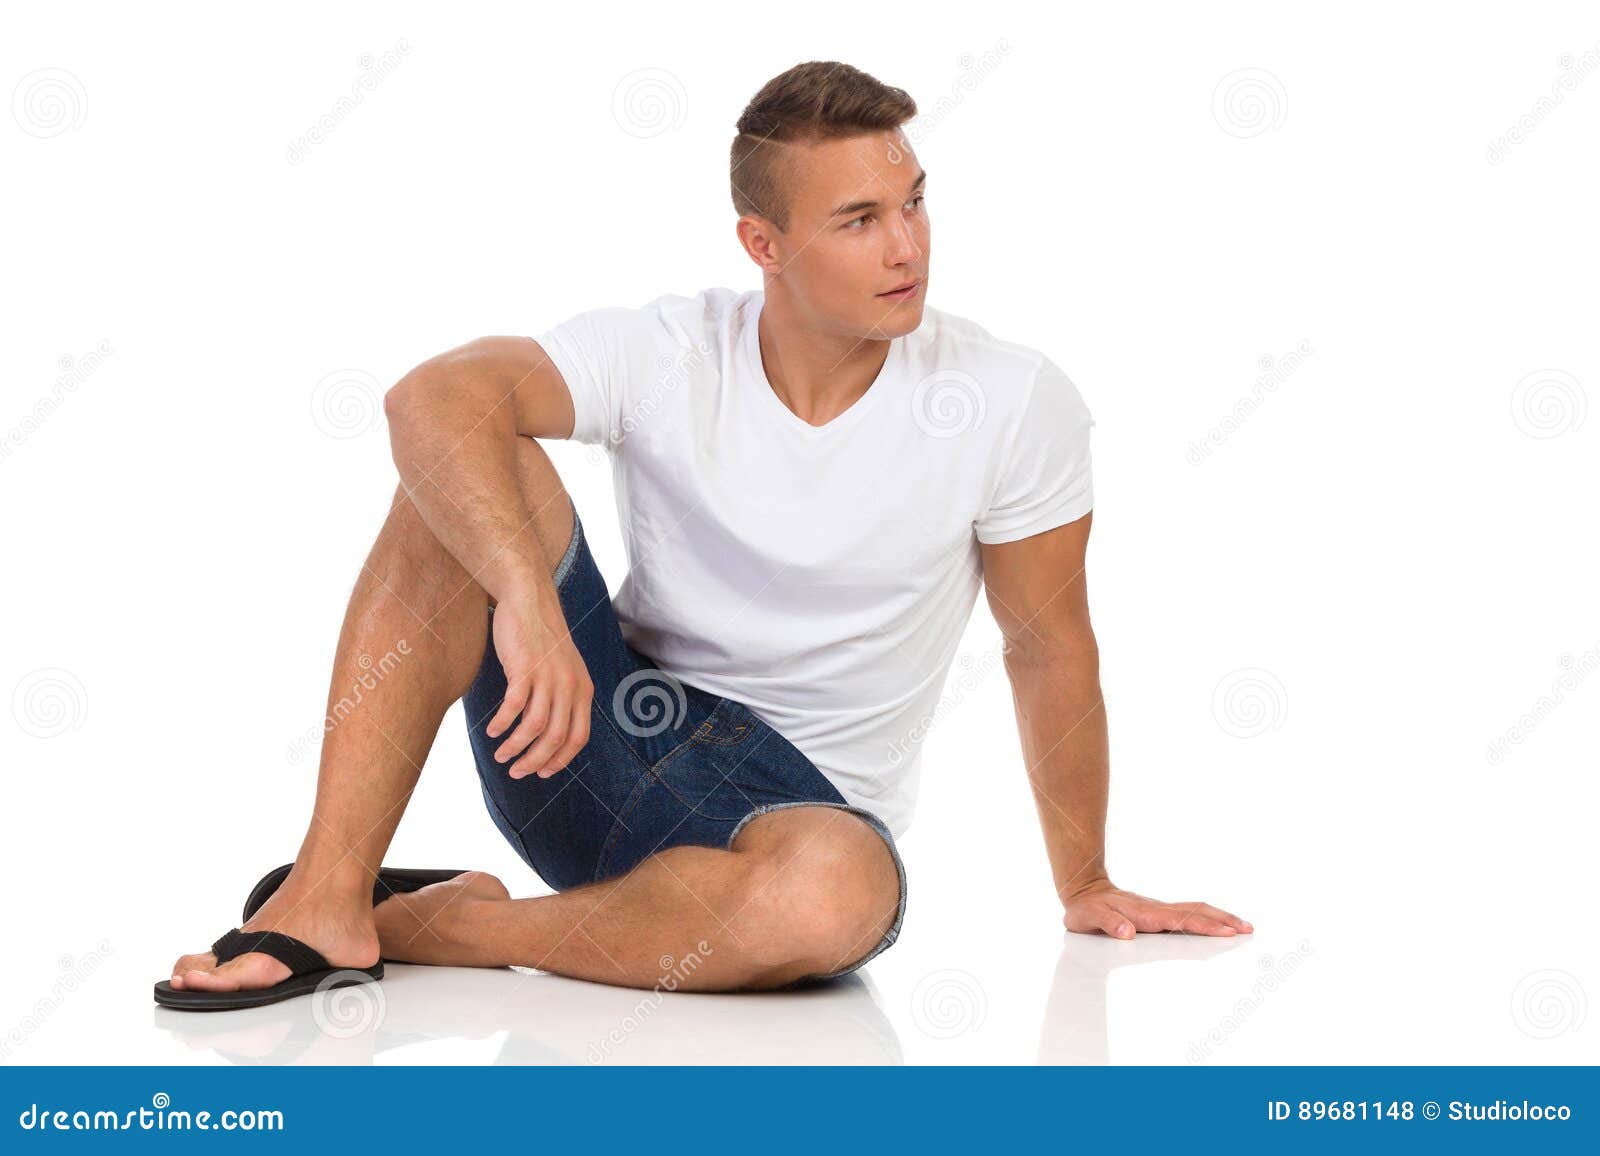 Ноги в стороны у мужчин. Человек сидит на полу. Мужчина сидит на полу. Мужчина сидя на полу. Человек сидит в шортах.